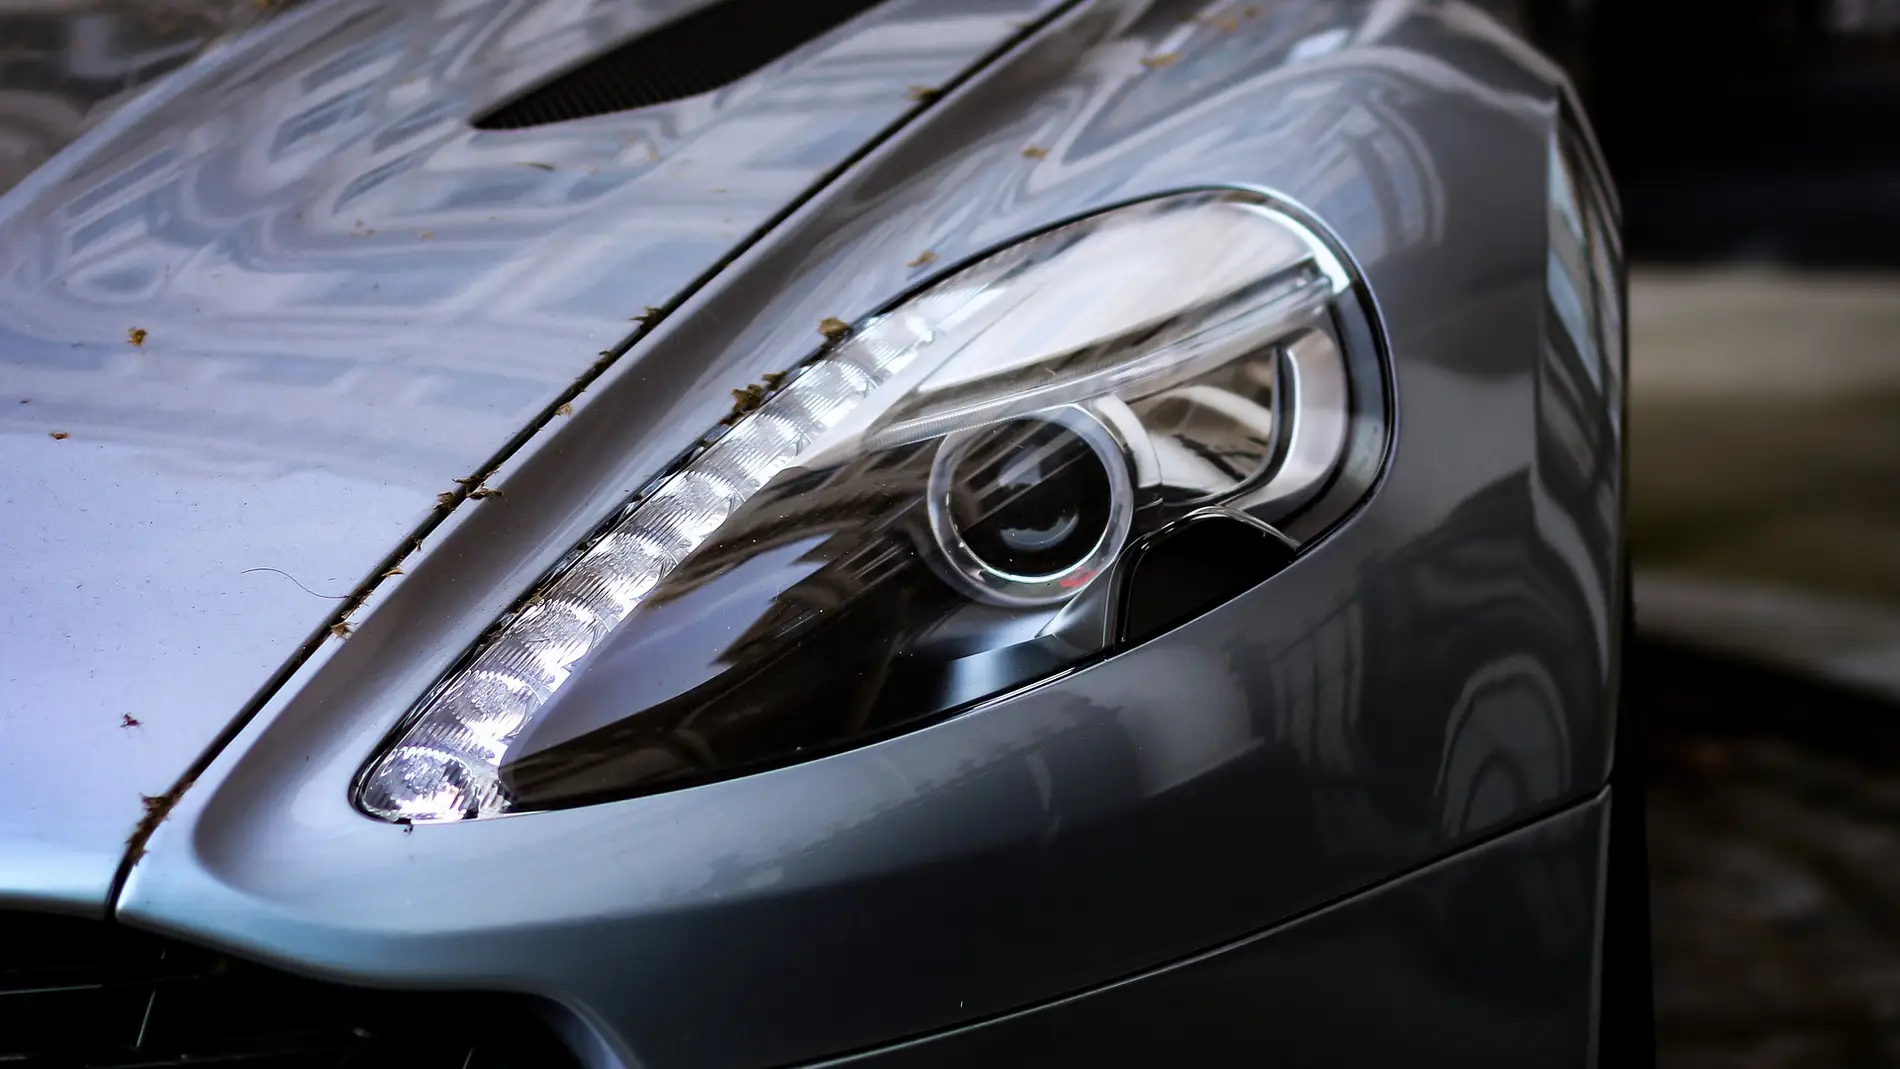 Ebrio y el Aston Martin destrozado: Así quedó el nuevo coche de un youtuber de Andorra tras un aparatoso accidente